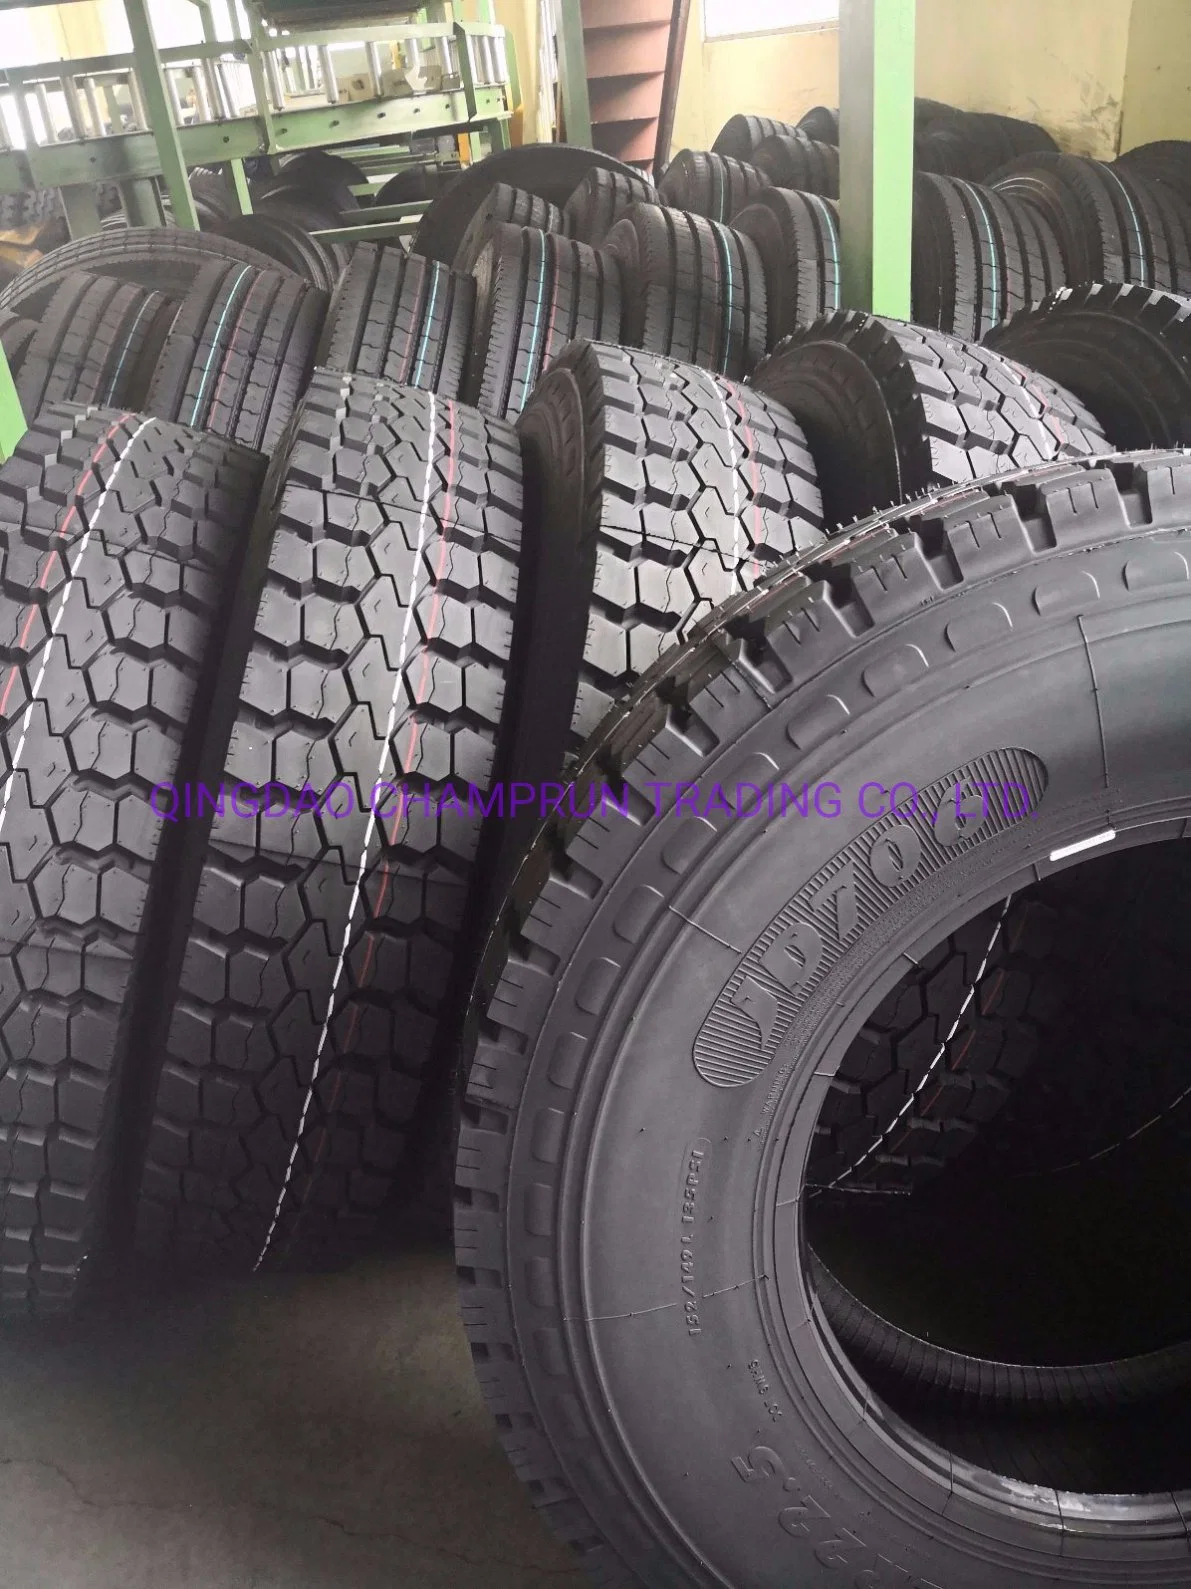 Buena calidad de todos los neumáticos para camiones llantas de acero /Nuevo patrón 12r22.5 Fa706 Frideric Chilong/marca de posición de remolque/unidad